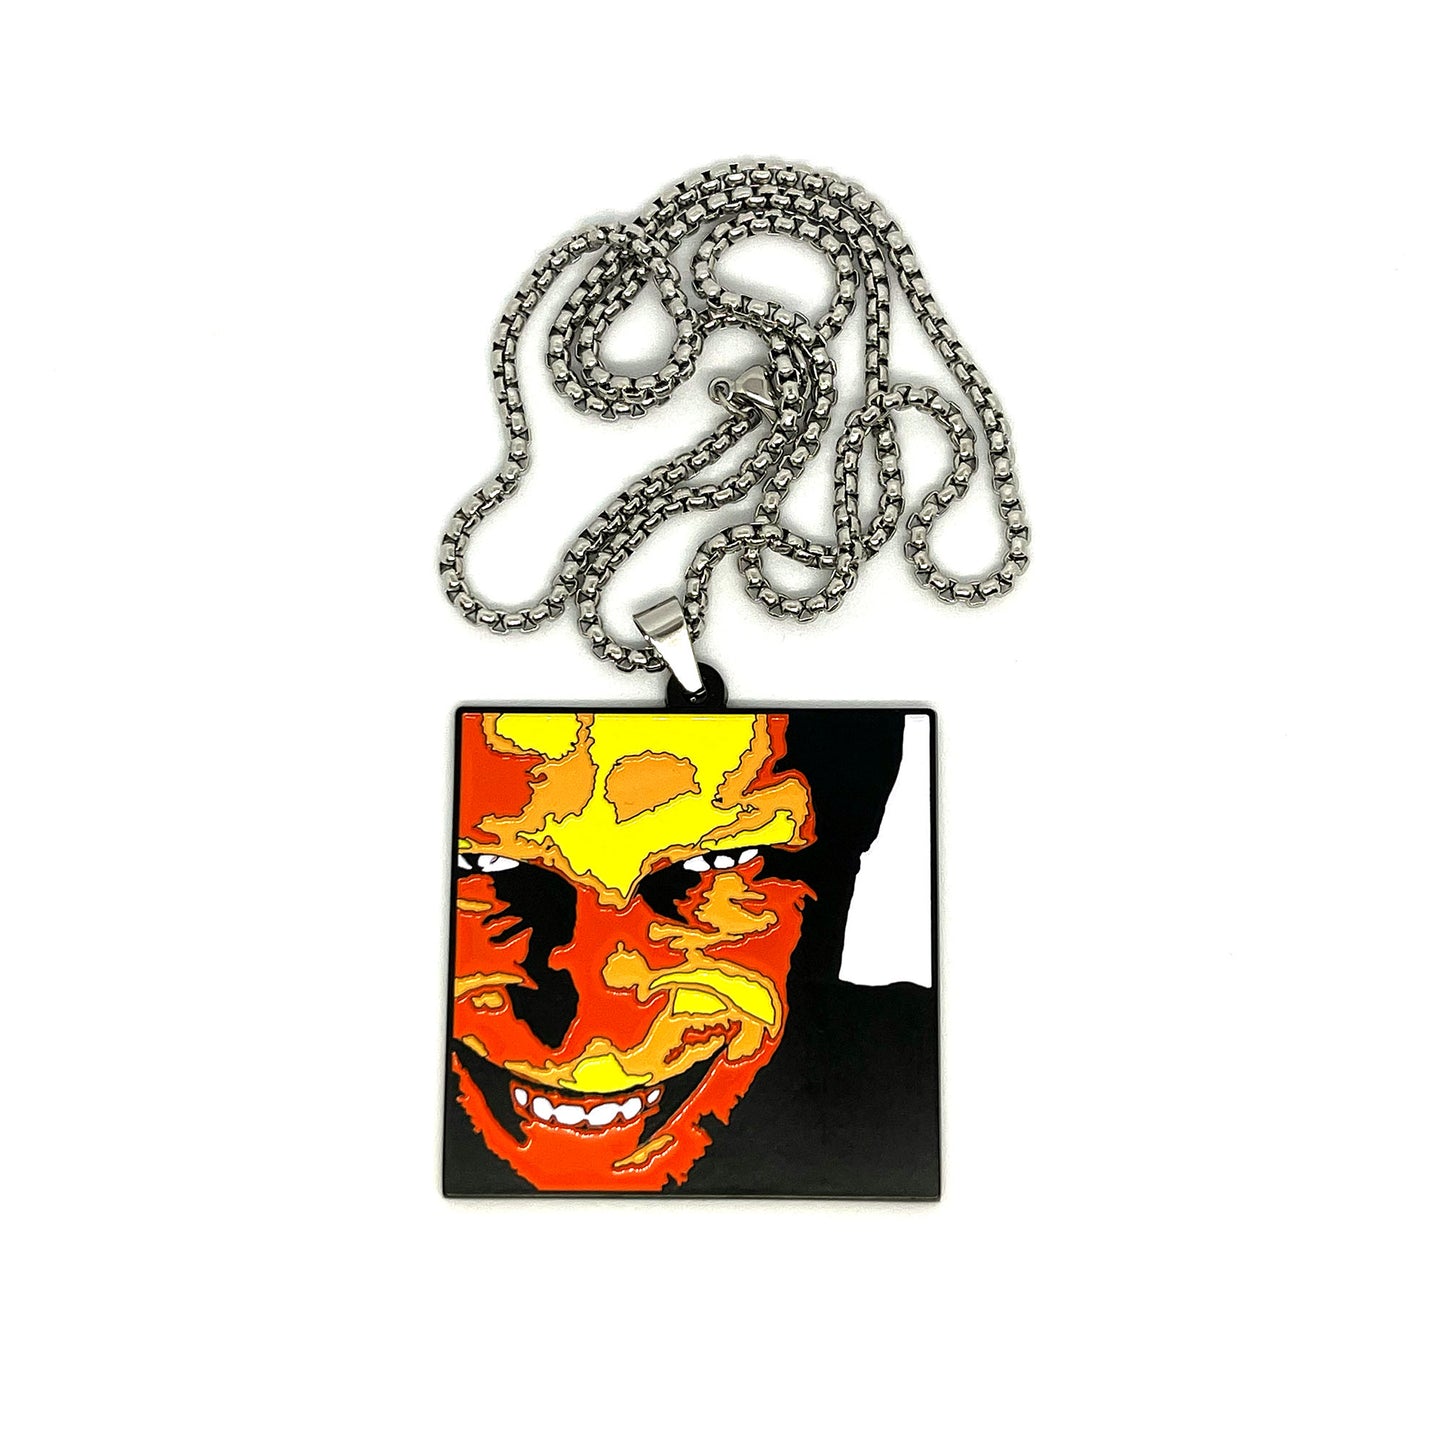 Aphex Twin "Richard D James Album" Fan-Made Enamel Pendant Necklace – 60cm Stainless Steel Chain